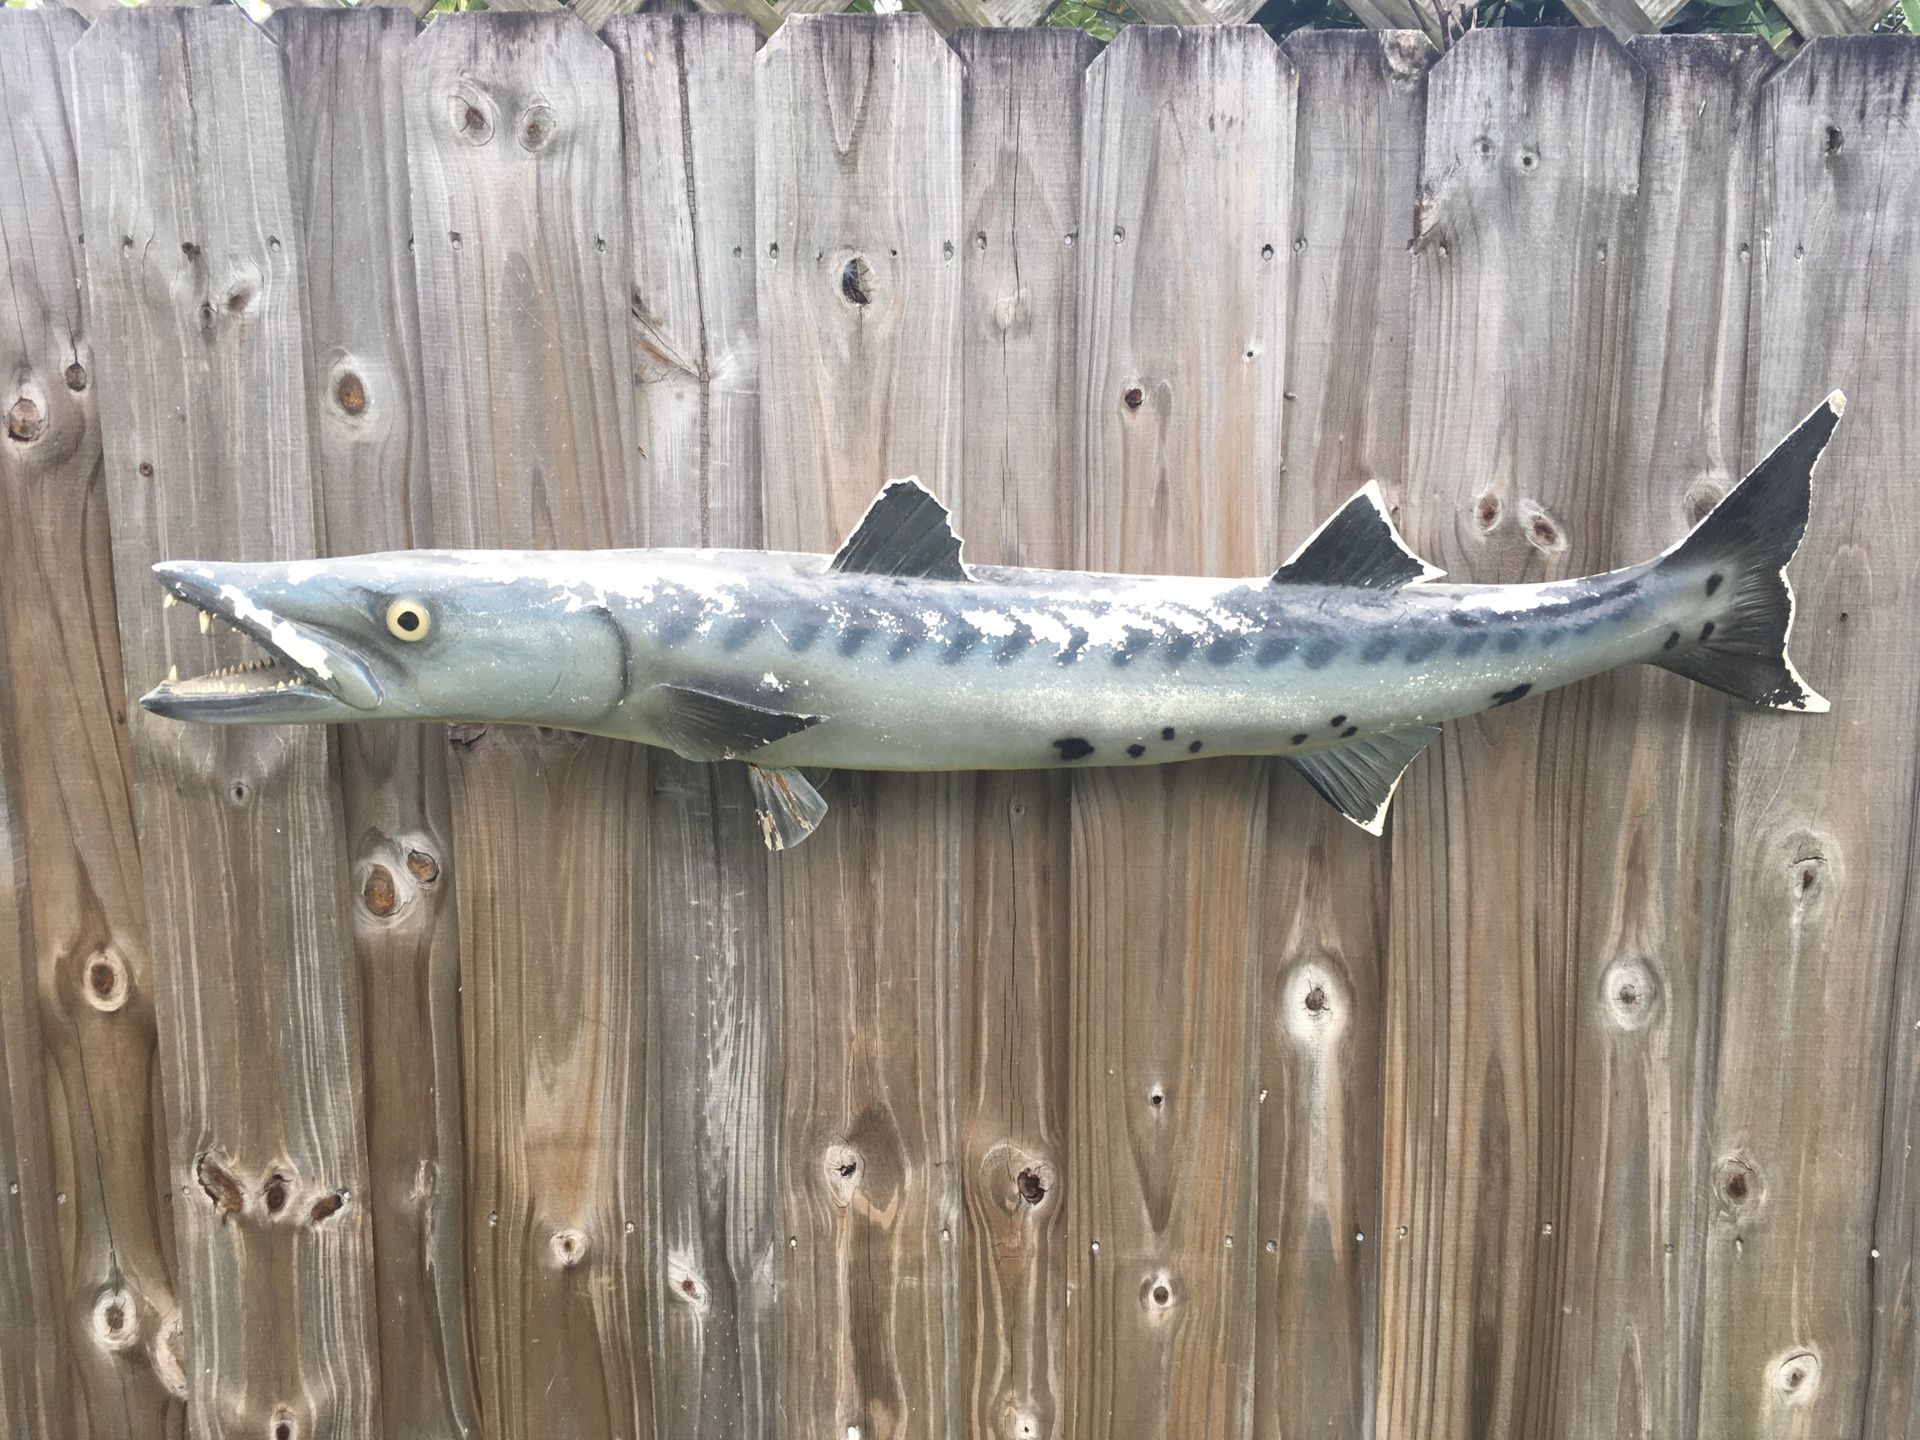 Barracuda taxidermy fish mount